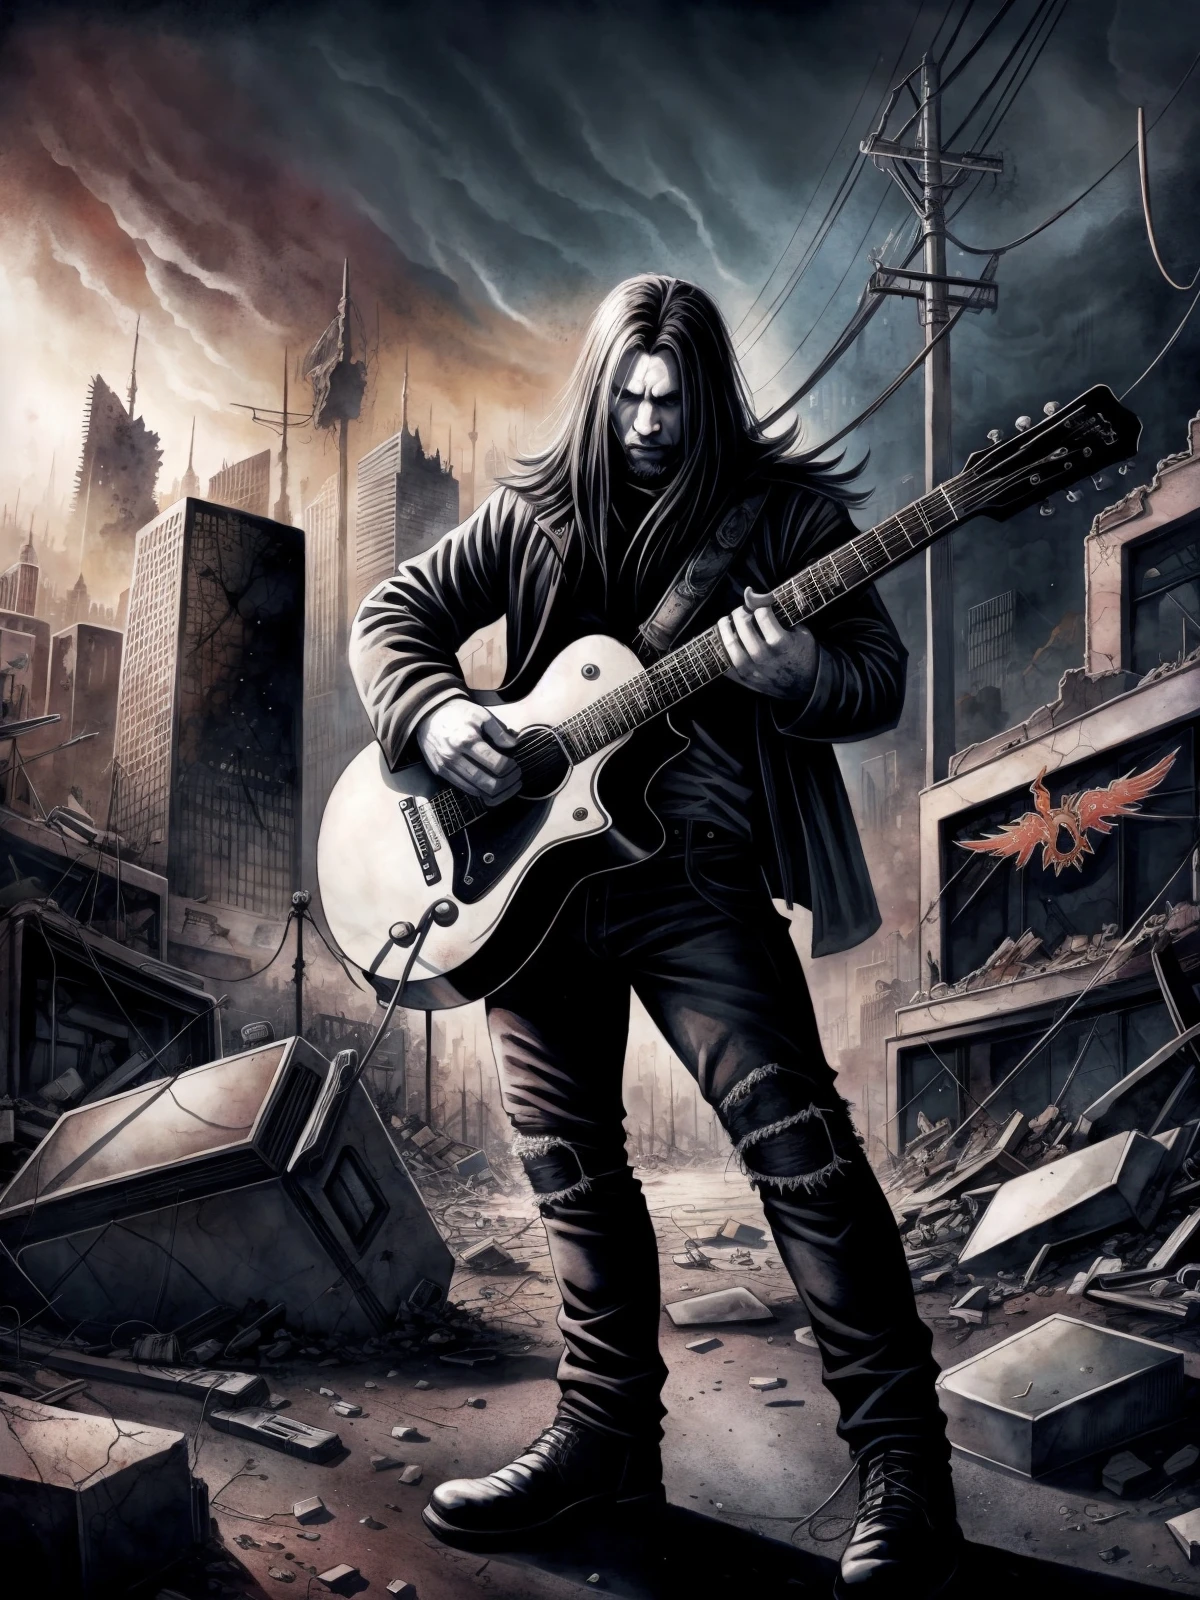 Блэк-металлист играет на гитаре в последний день на земле , Постапокалиптический разрушенный город фон (красочная акварель )